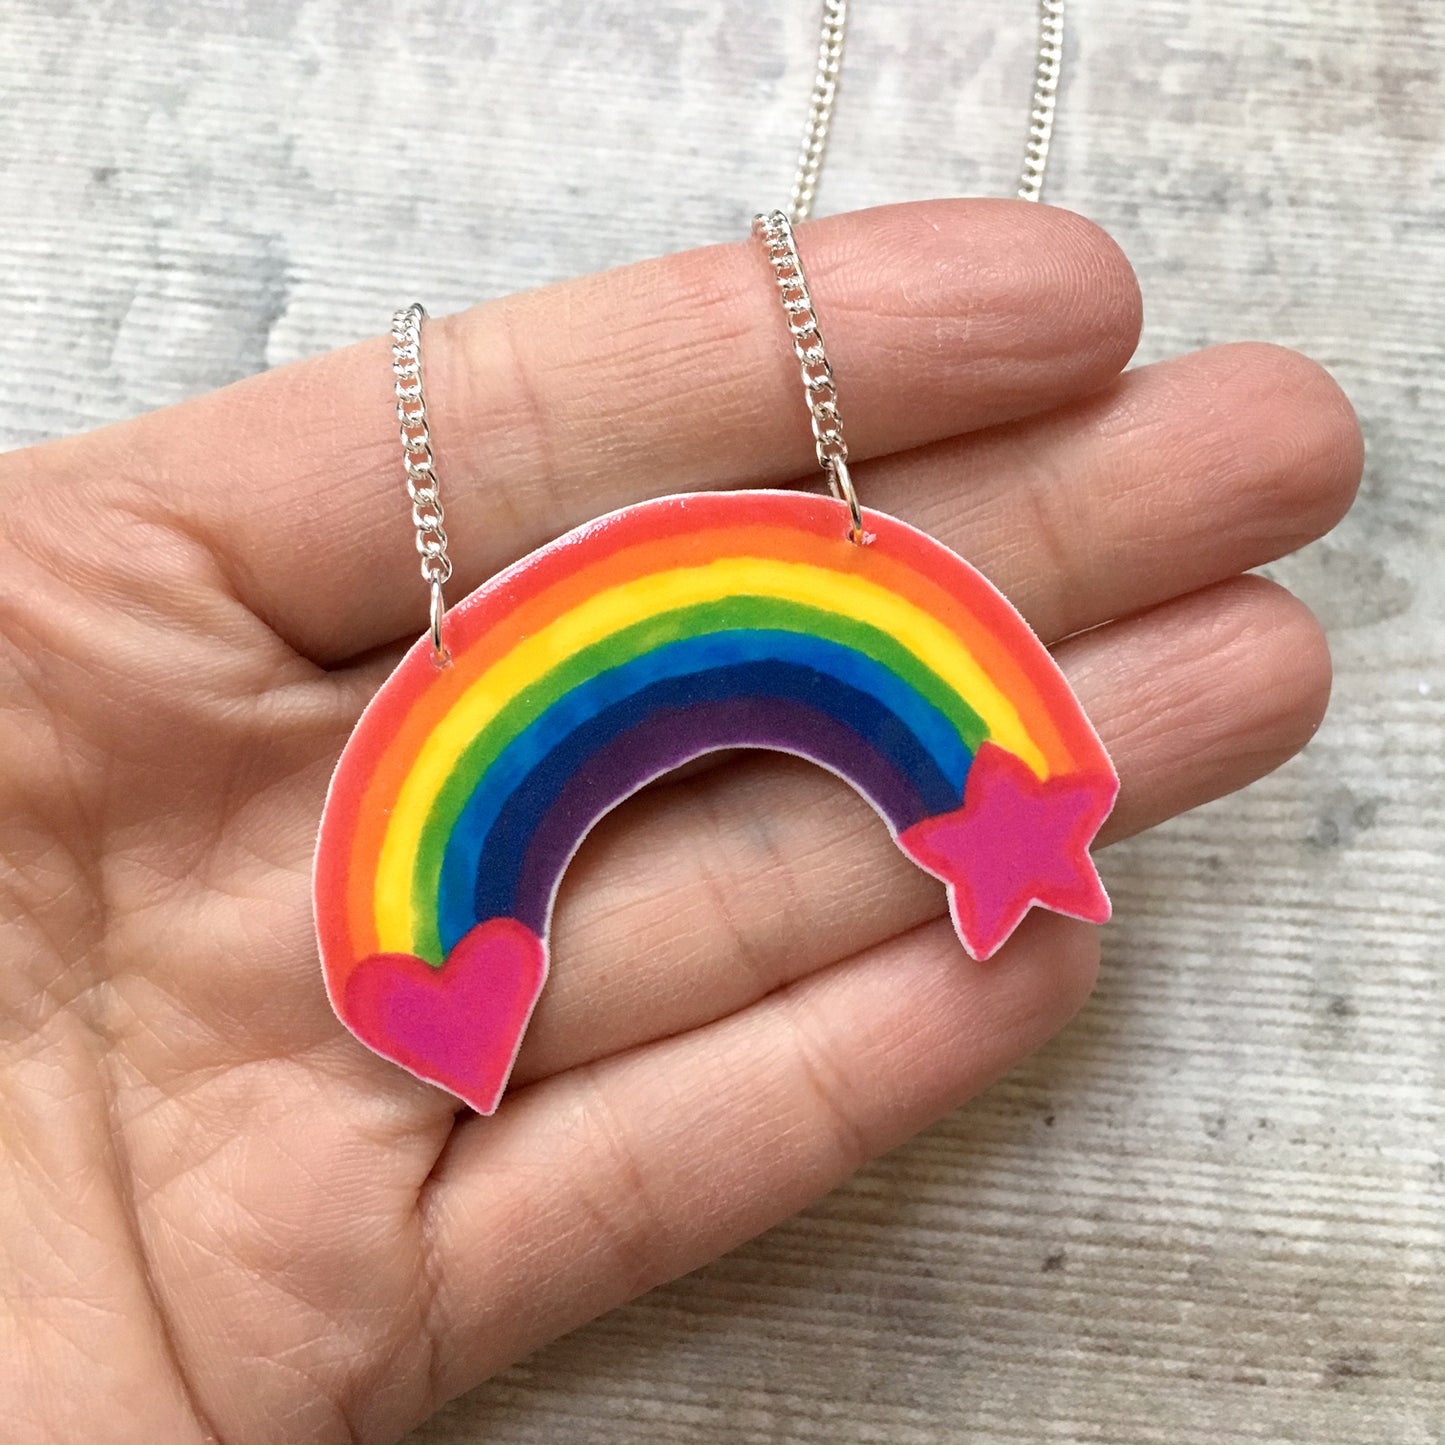 Rainbow colour pop bright pendant necklace